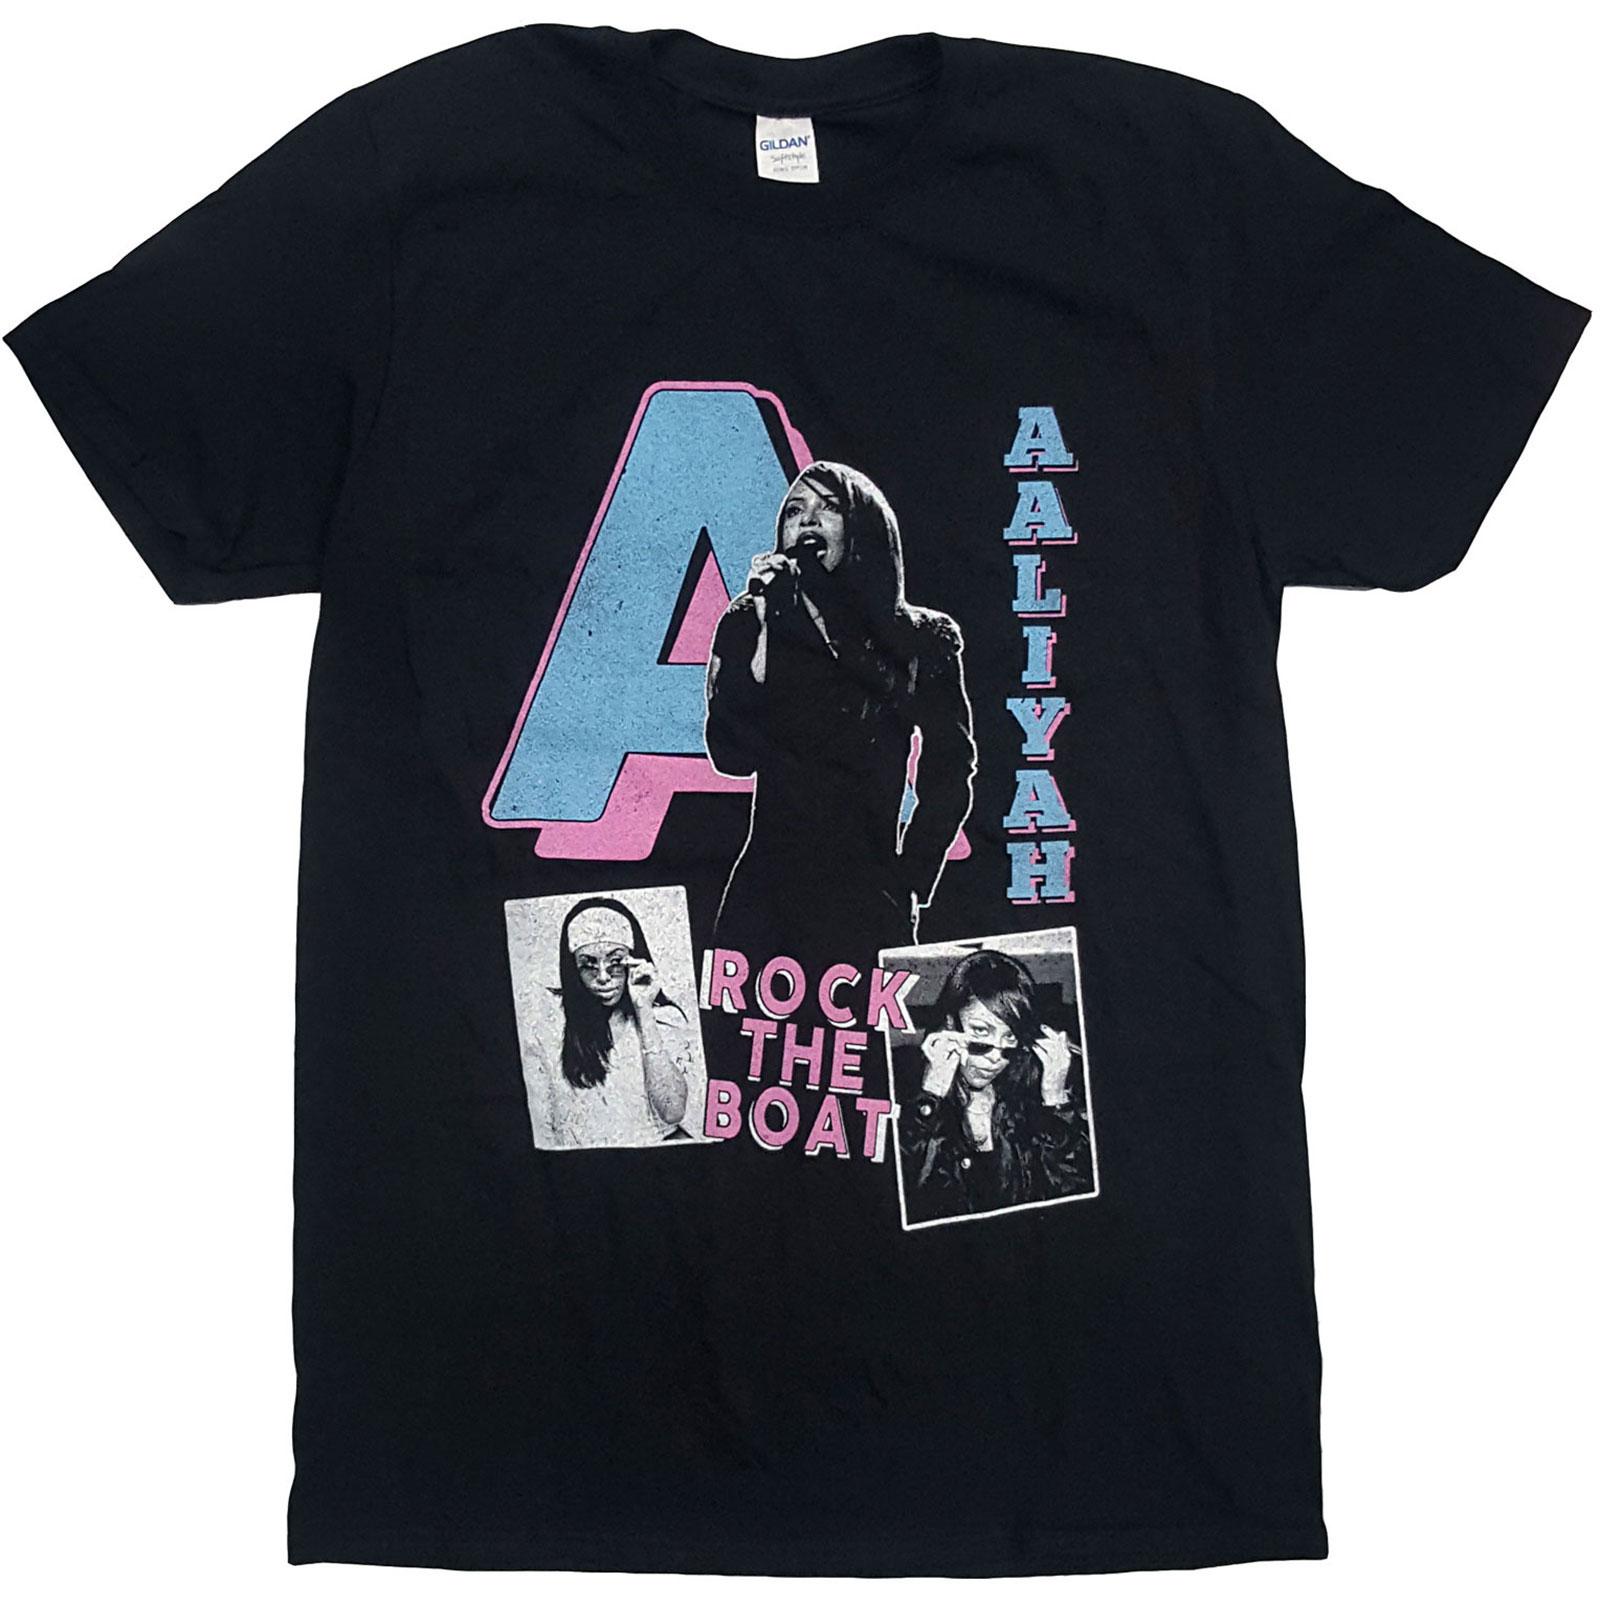 (アリーヤ) Aaliyah オフィシャル商品 ユニセックス Rock The Boat Tシャツ 半袖 トップス 【海外通販】